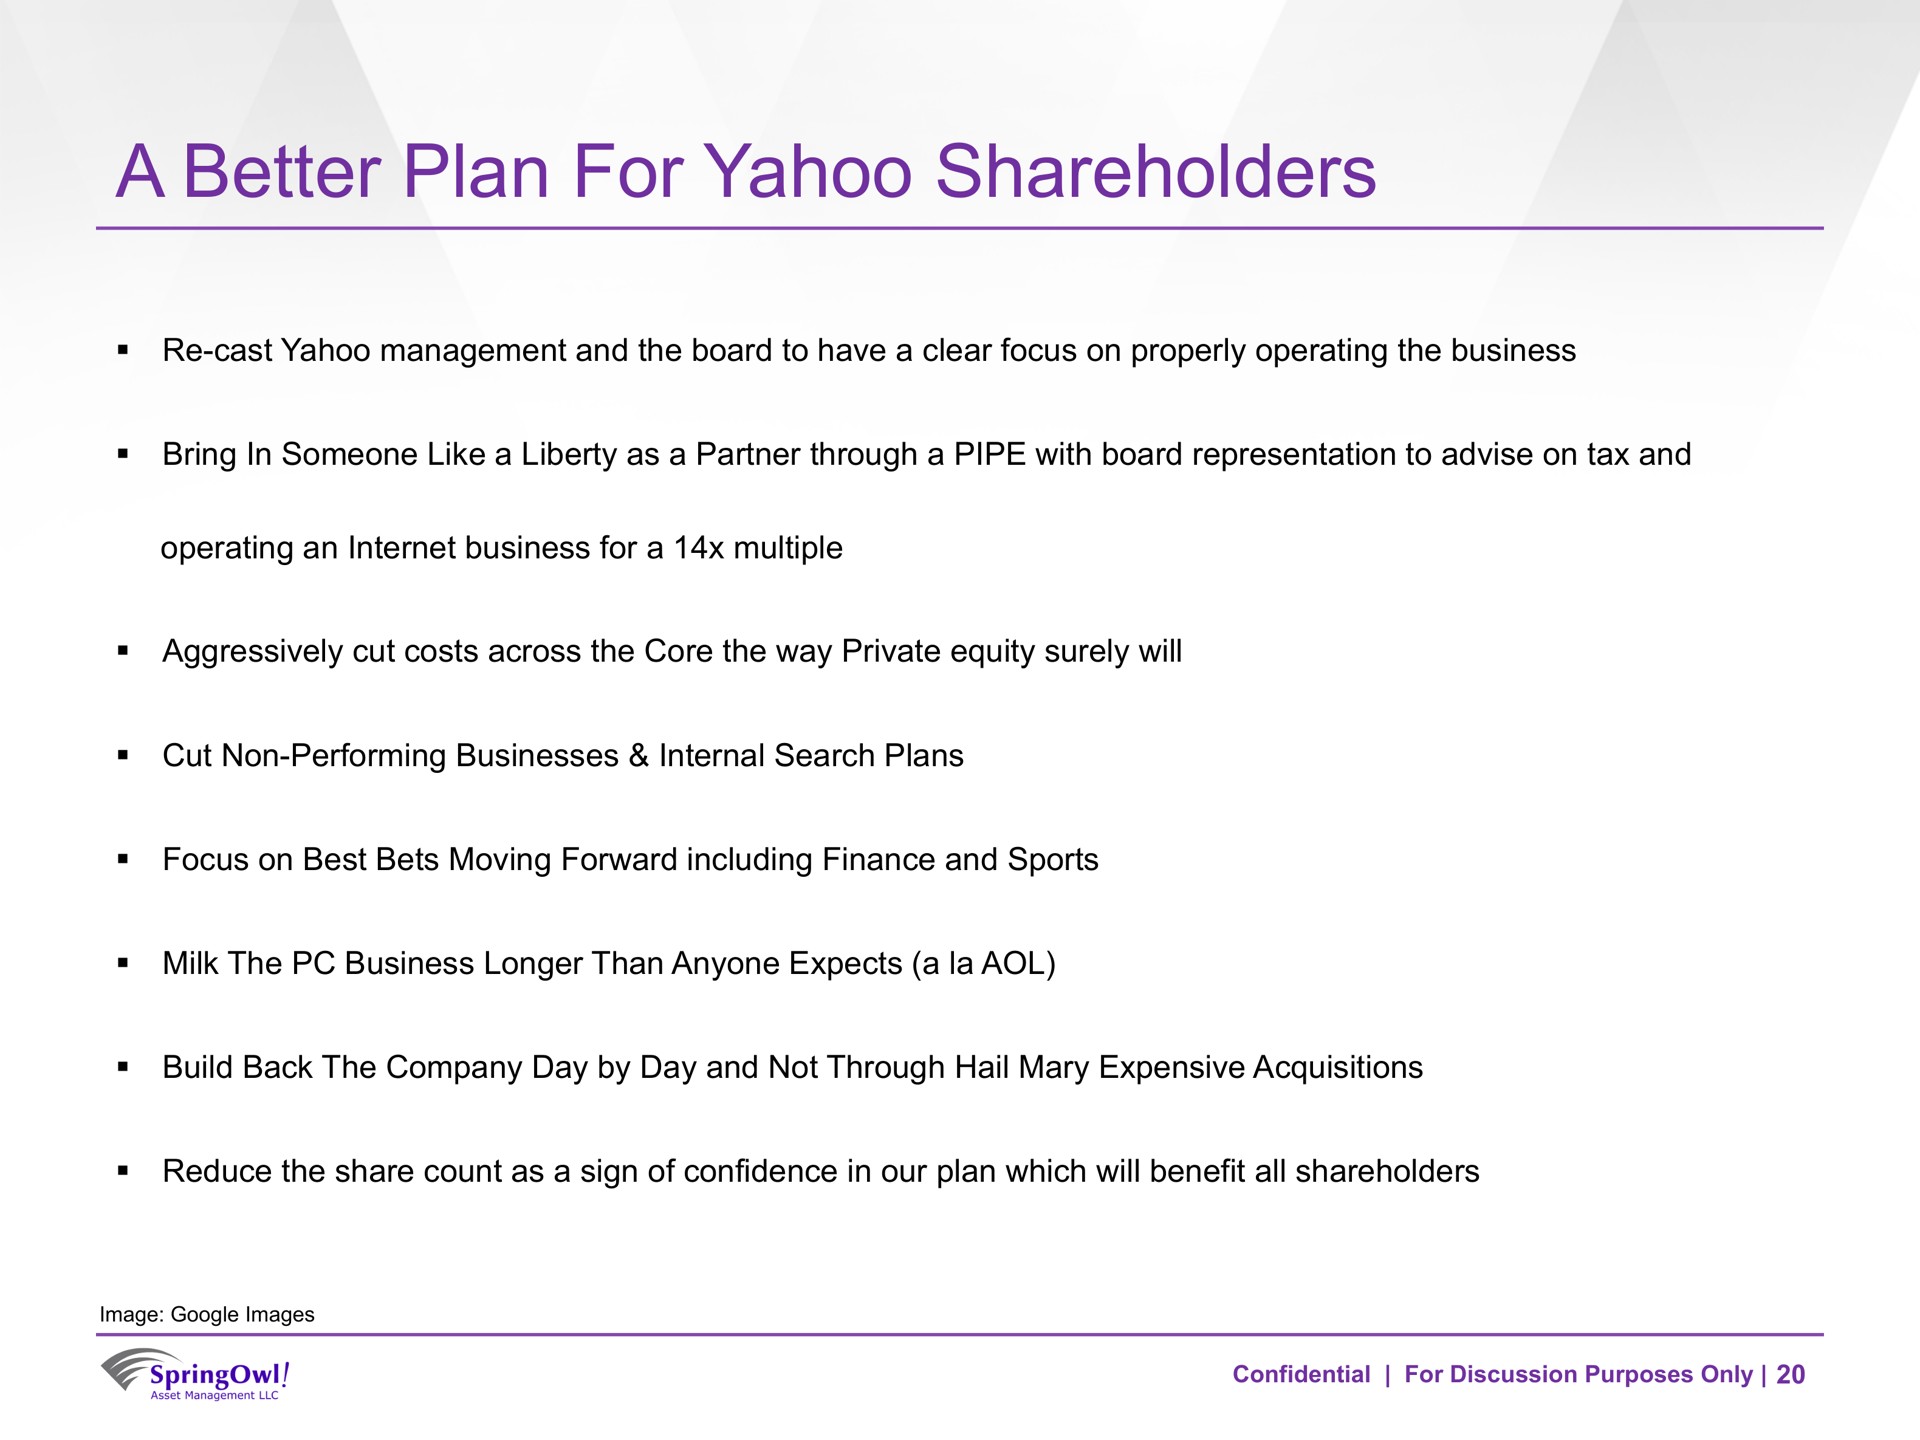 a better plan for yahoo shareholders | SpringOwl